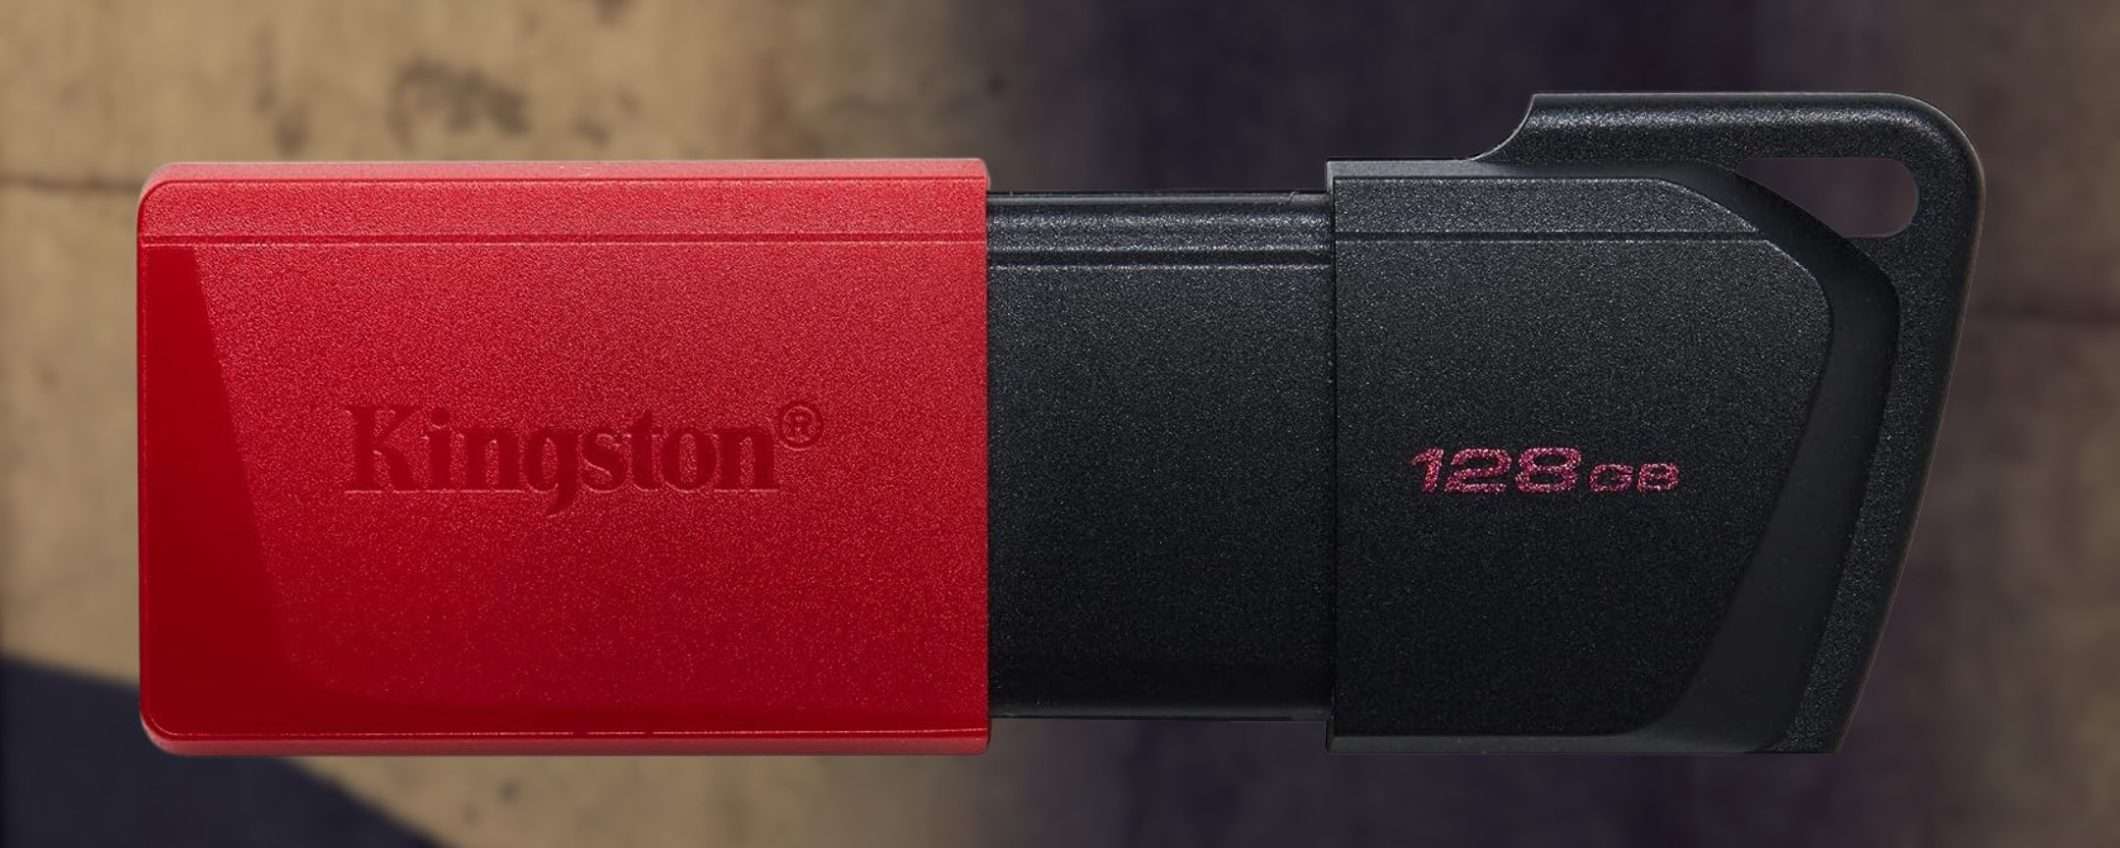 Kingston, chiavetta USB 128GB a 8€: sconto SHOCK del 45% su Amazon